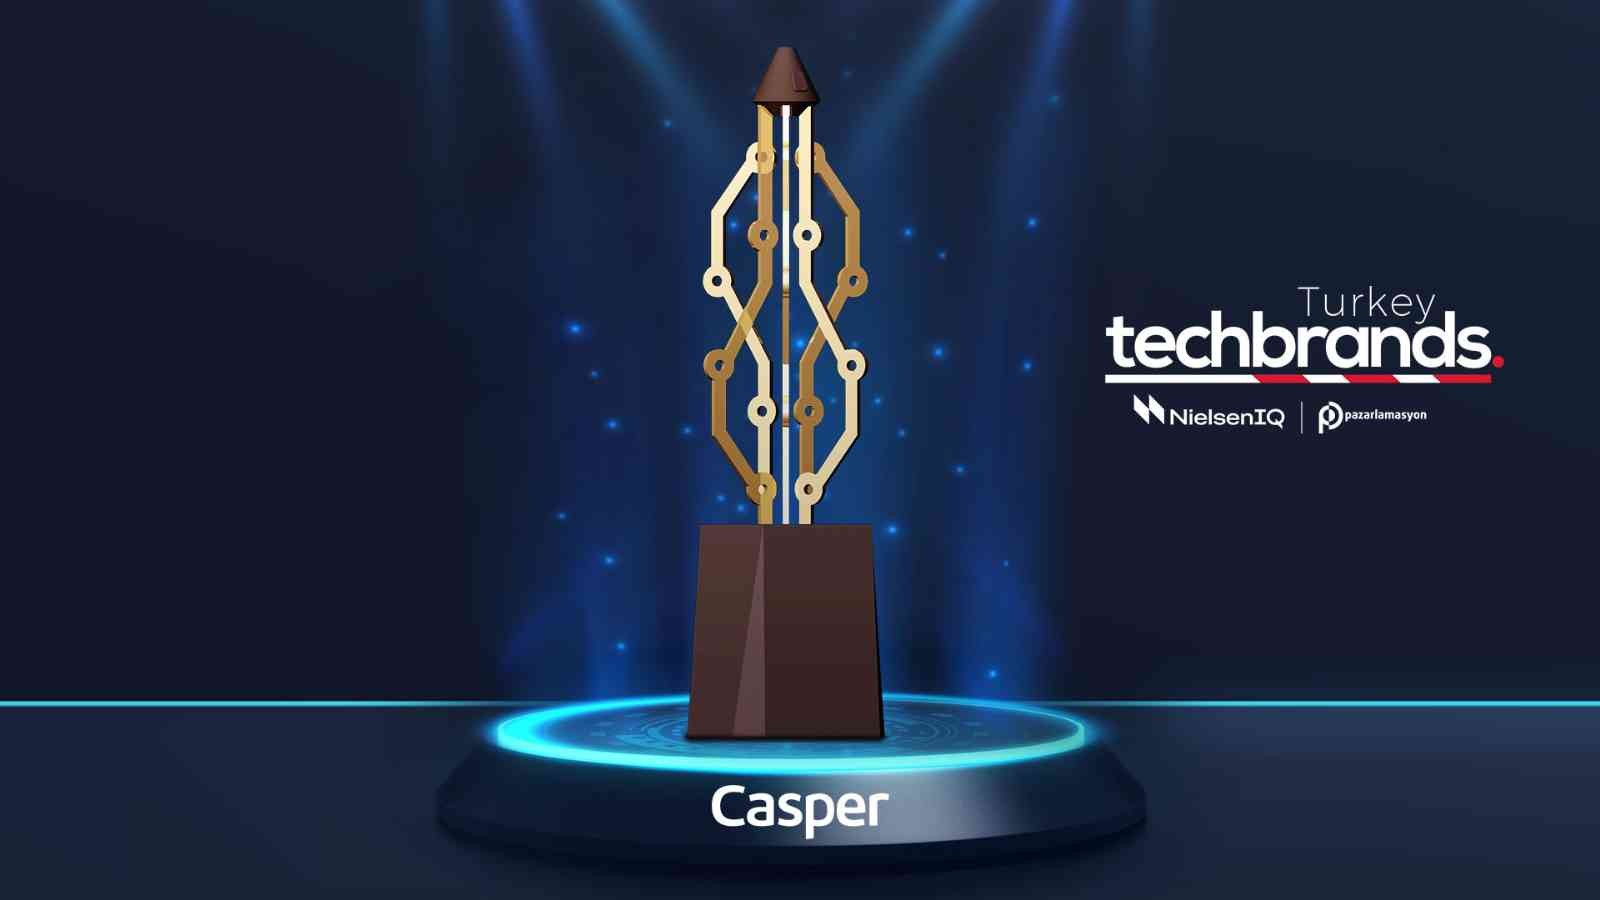 Türkiye’nin teknoloji tabanlı ilk ve tek ödülü olan Tech Brands Turkey araştırmasının sonuçları açıklandı. Casper, üst üste 3. kez “Bilgisayar ...